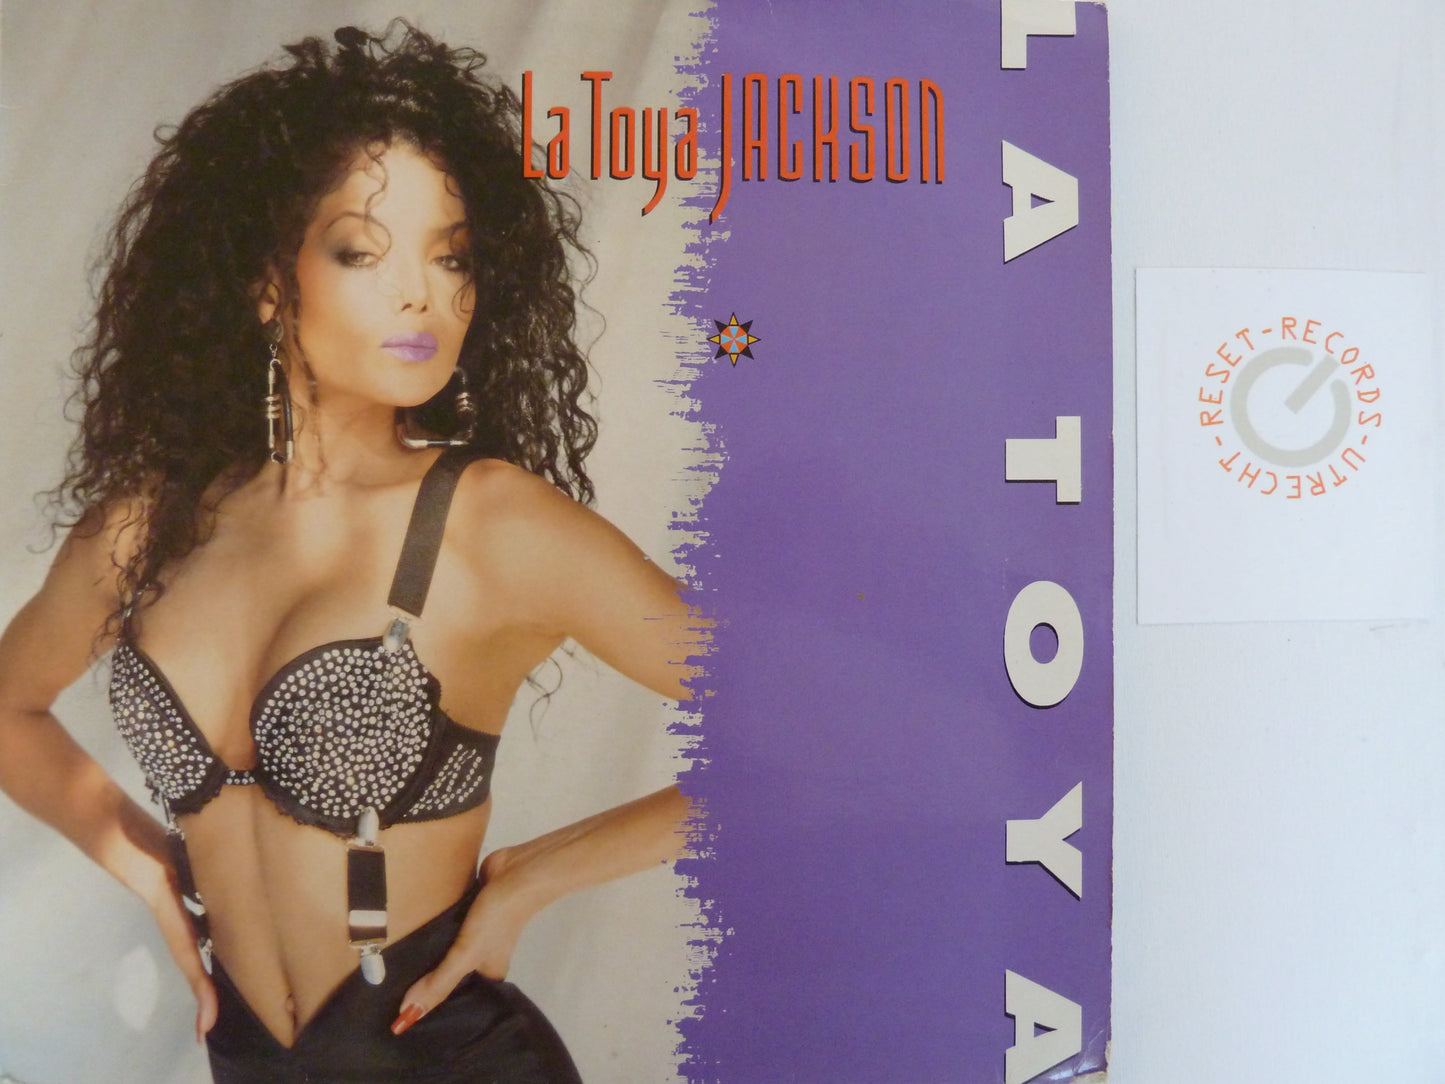 In de schaduw van je beroemde familie #5 geïnspireerd door La Toya Jackson – La Toya